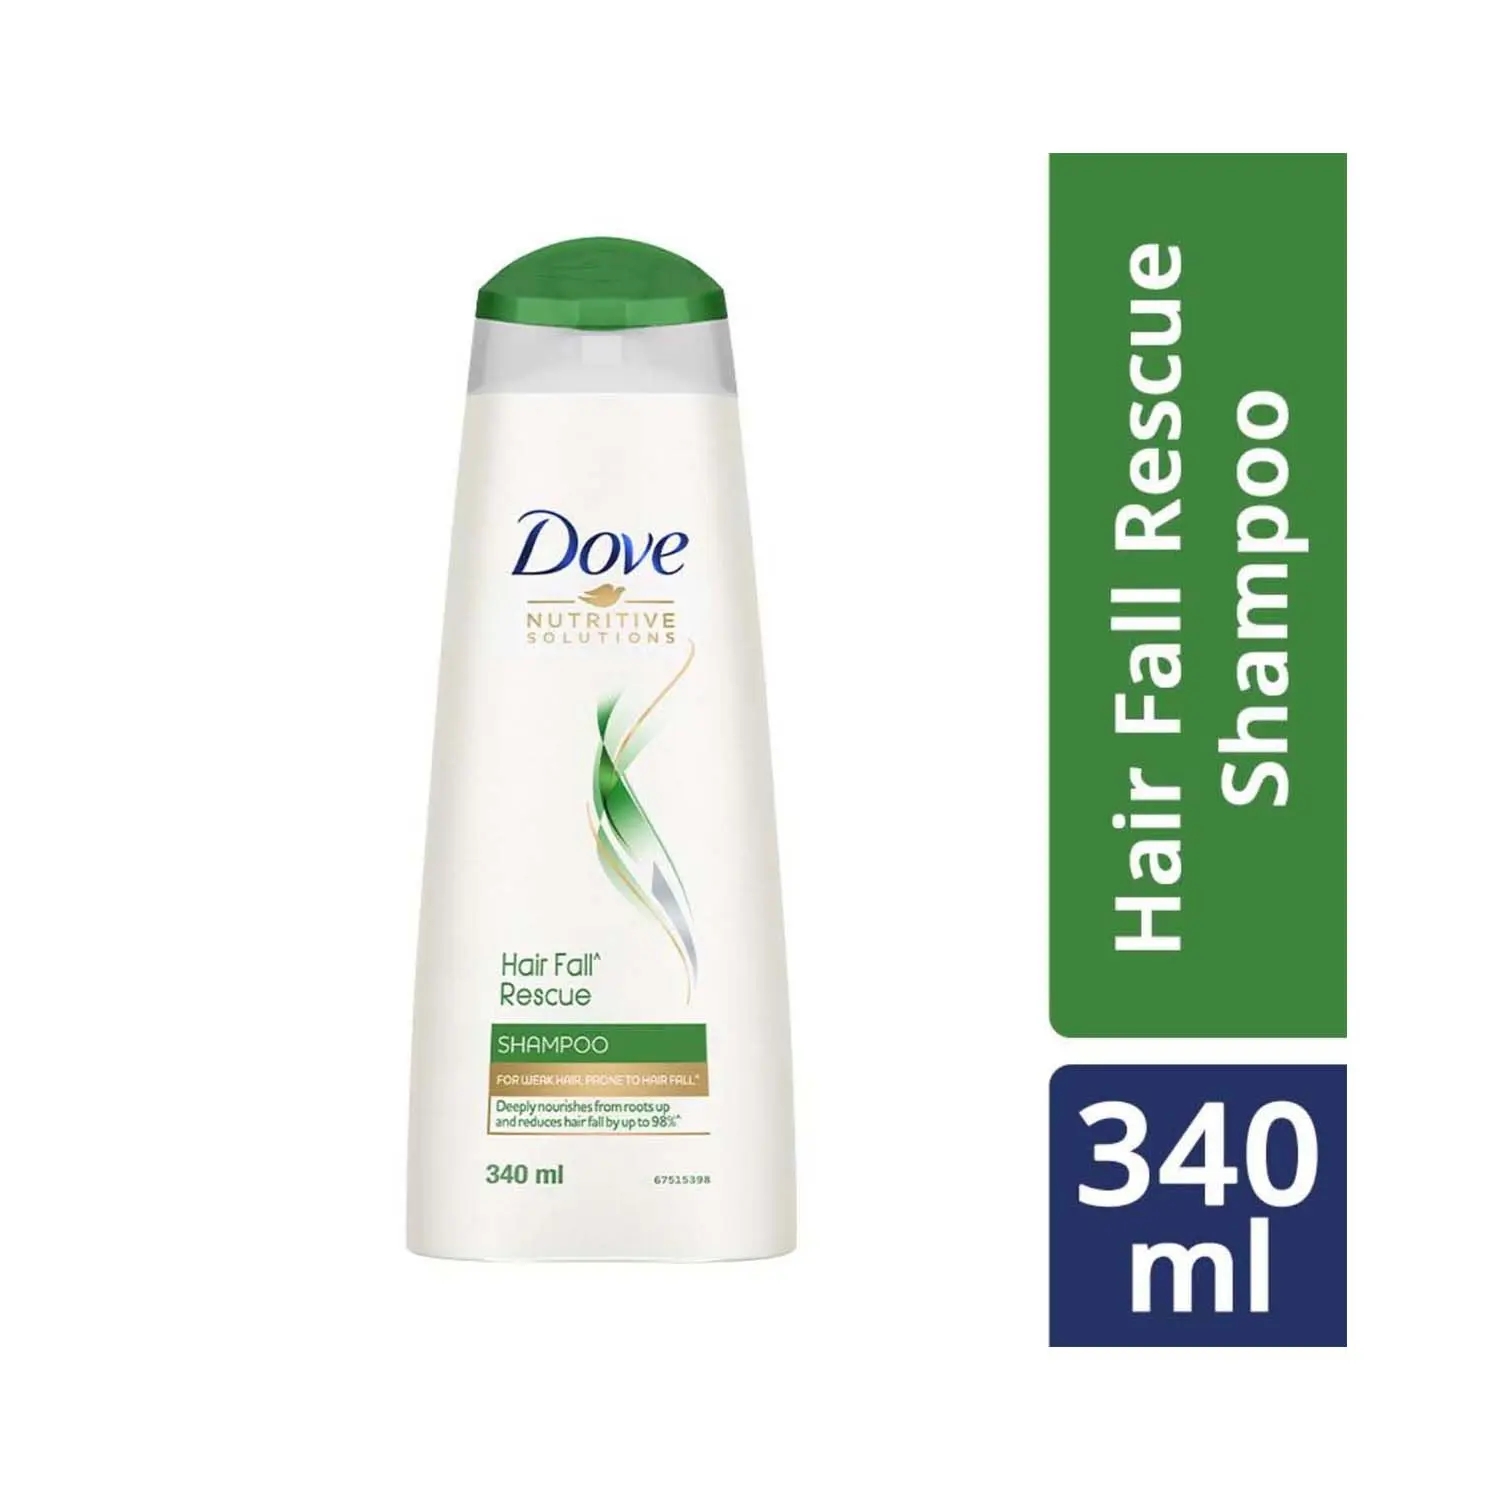 Dove Hair Fall Rescue Hair Shampoo (340ml)